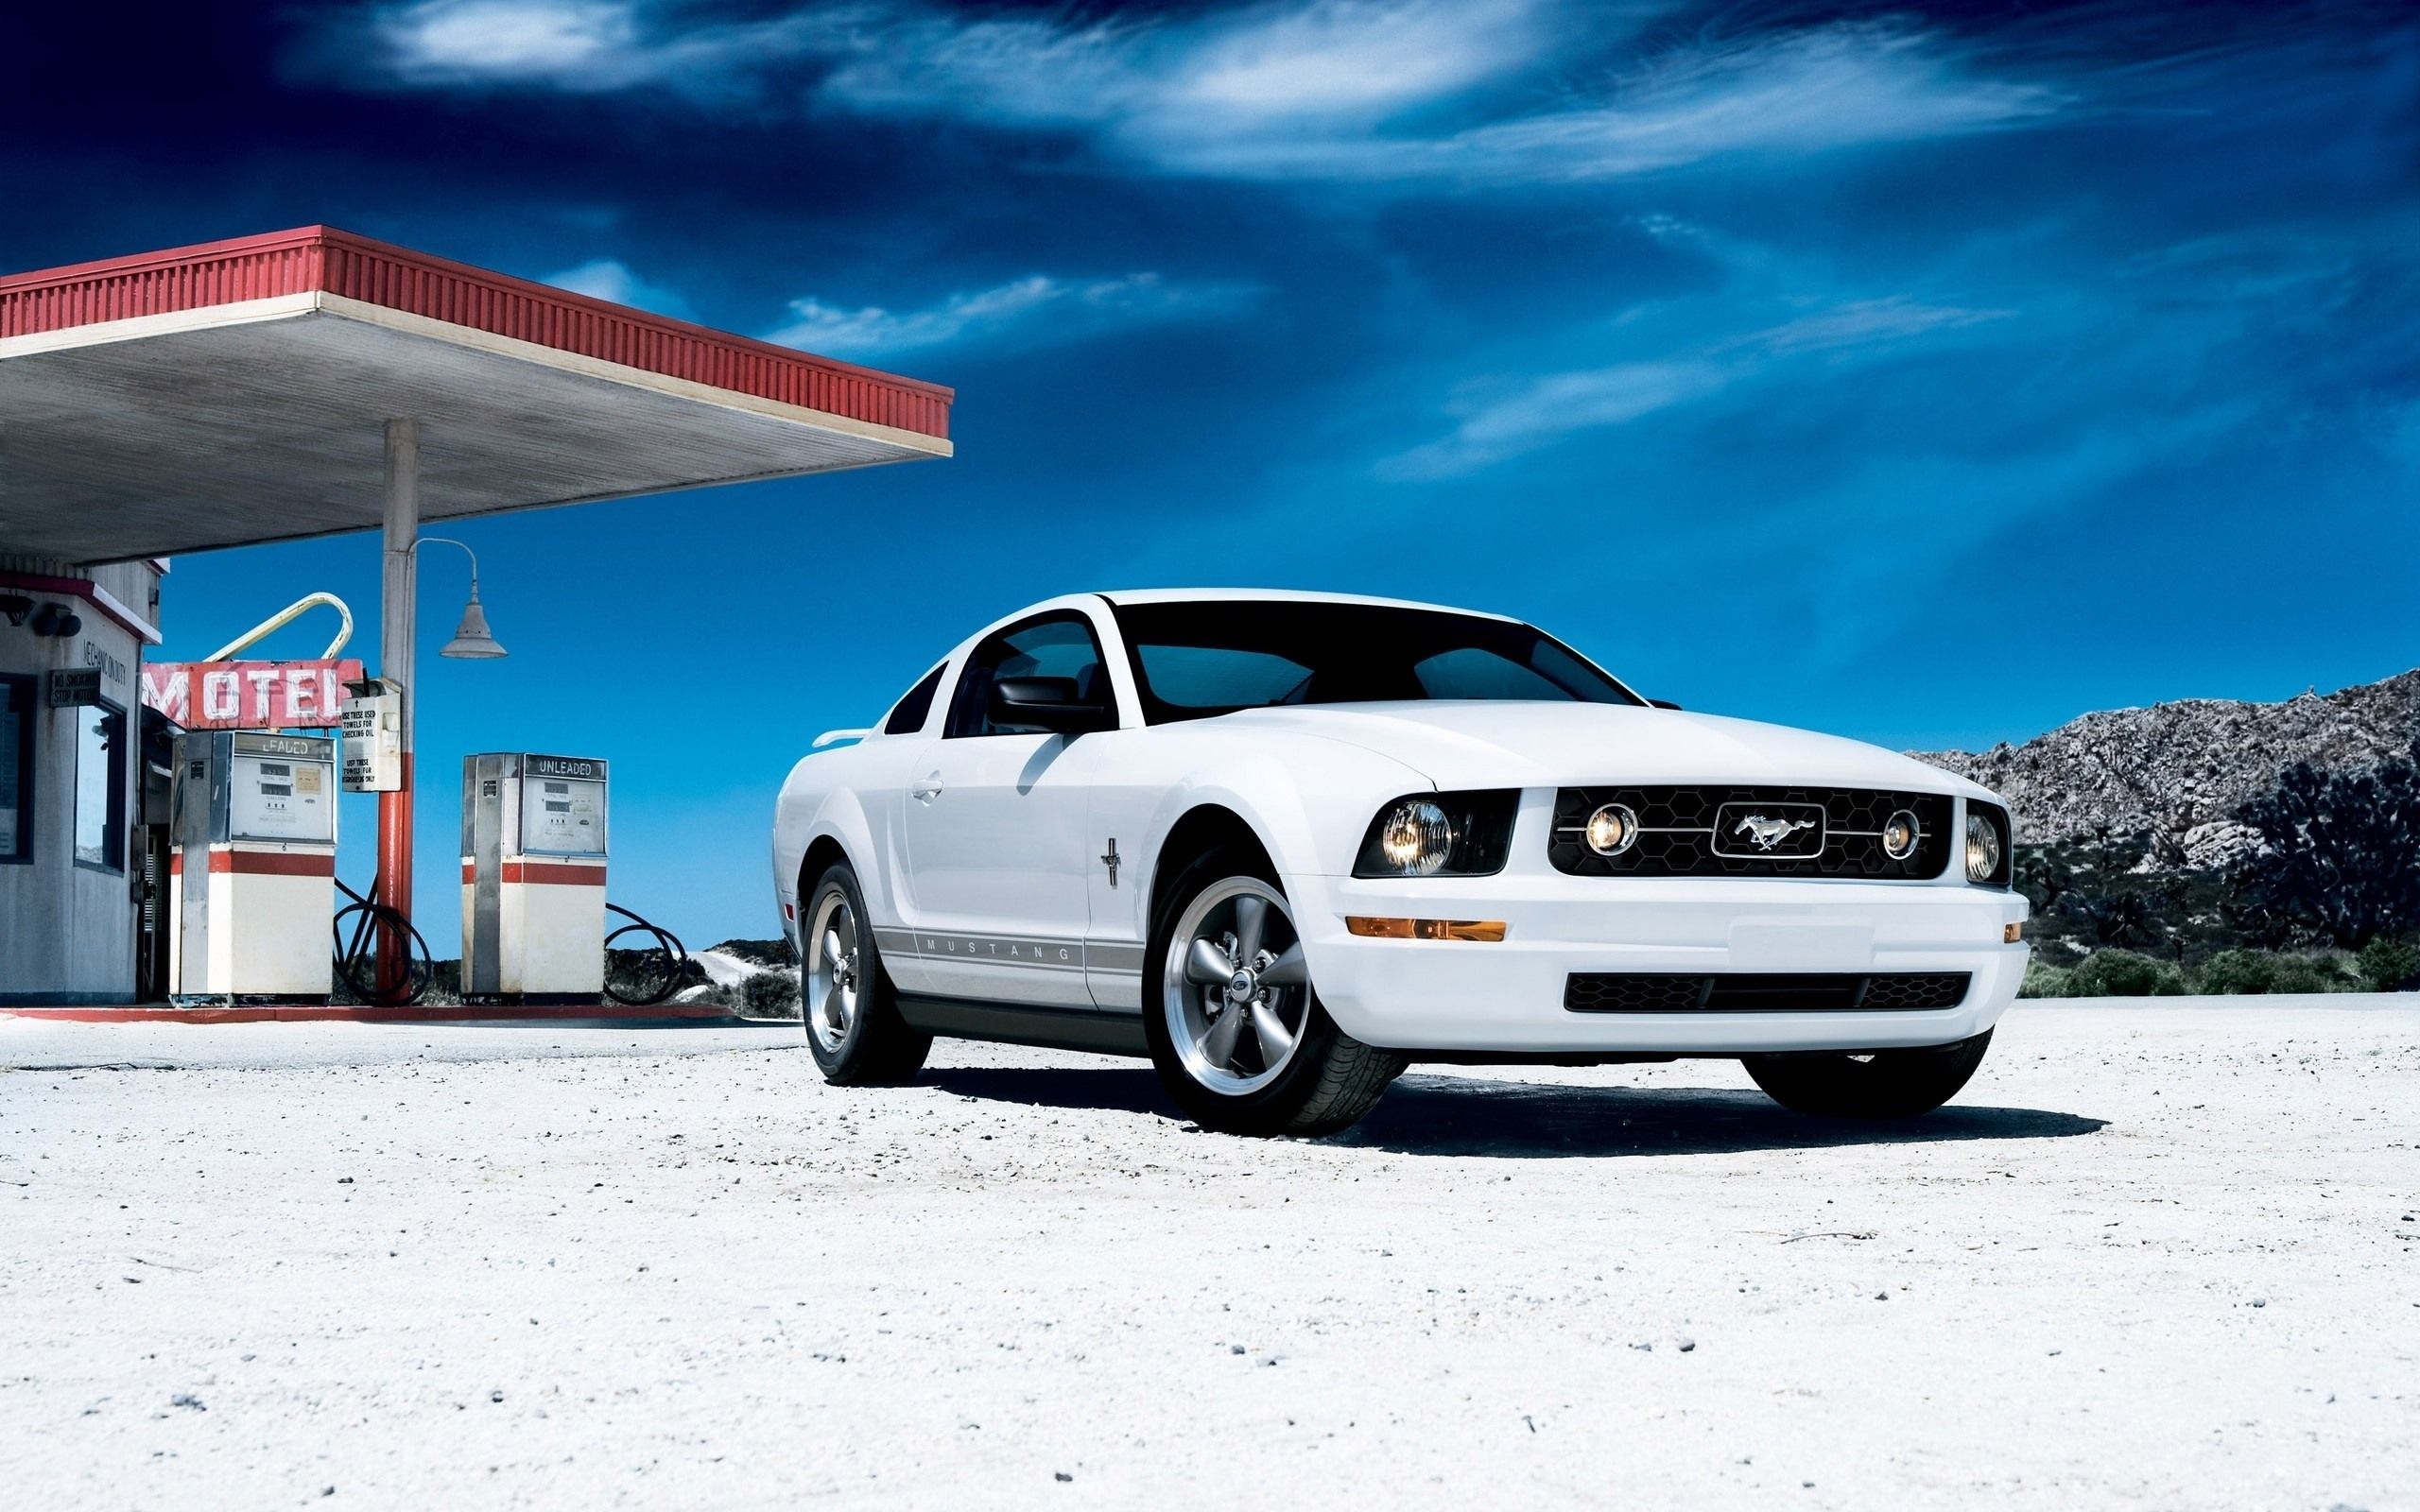  Ford Hintergrundbild 2560x1600. Ford Mustang weiße Auto Vorderansicht 2560x1600 HD Hintergrundbilder, HD, Bild